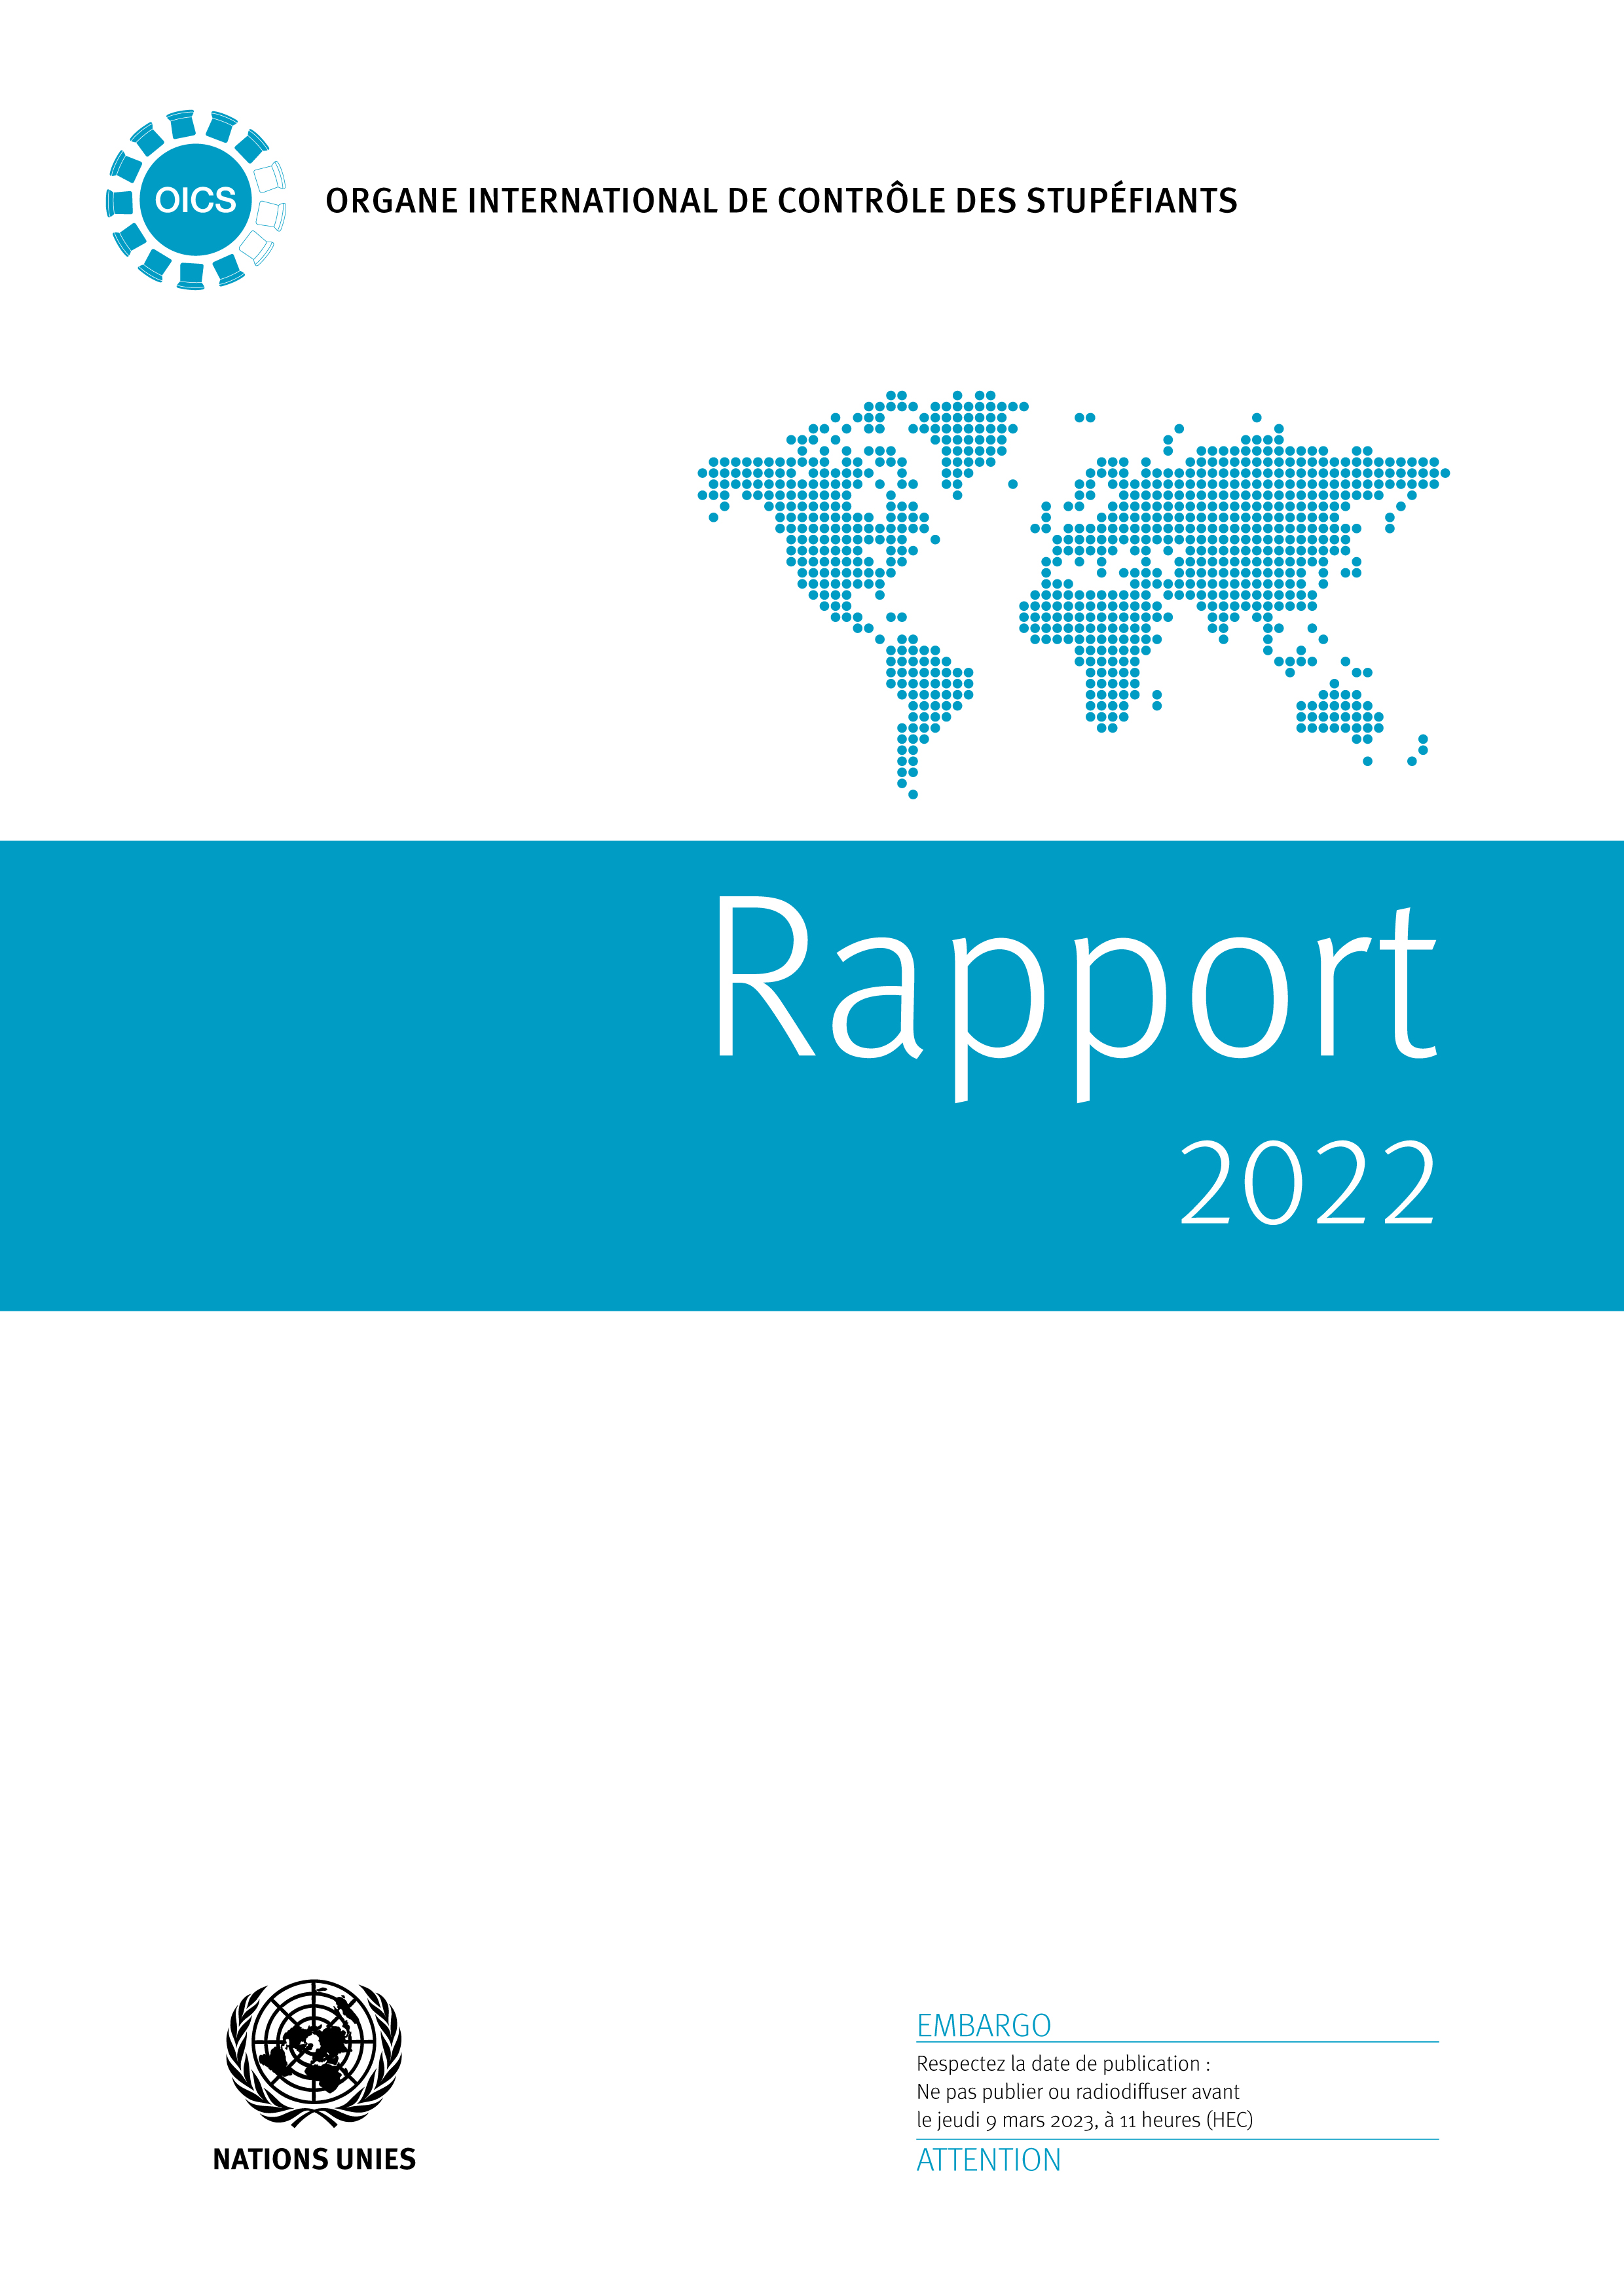 image of Rapport de l'Organe international de contrôle des stupéfiants pour 2022